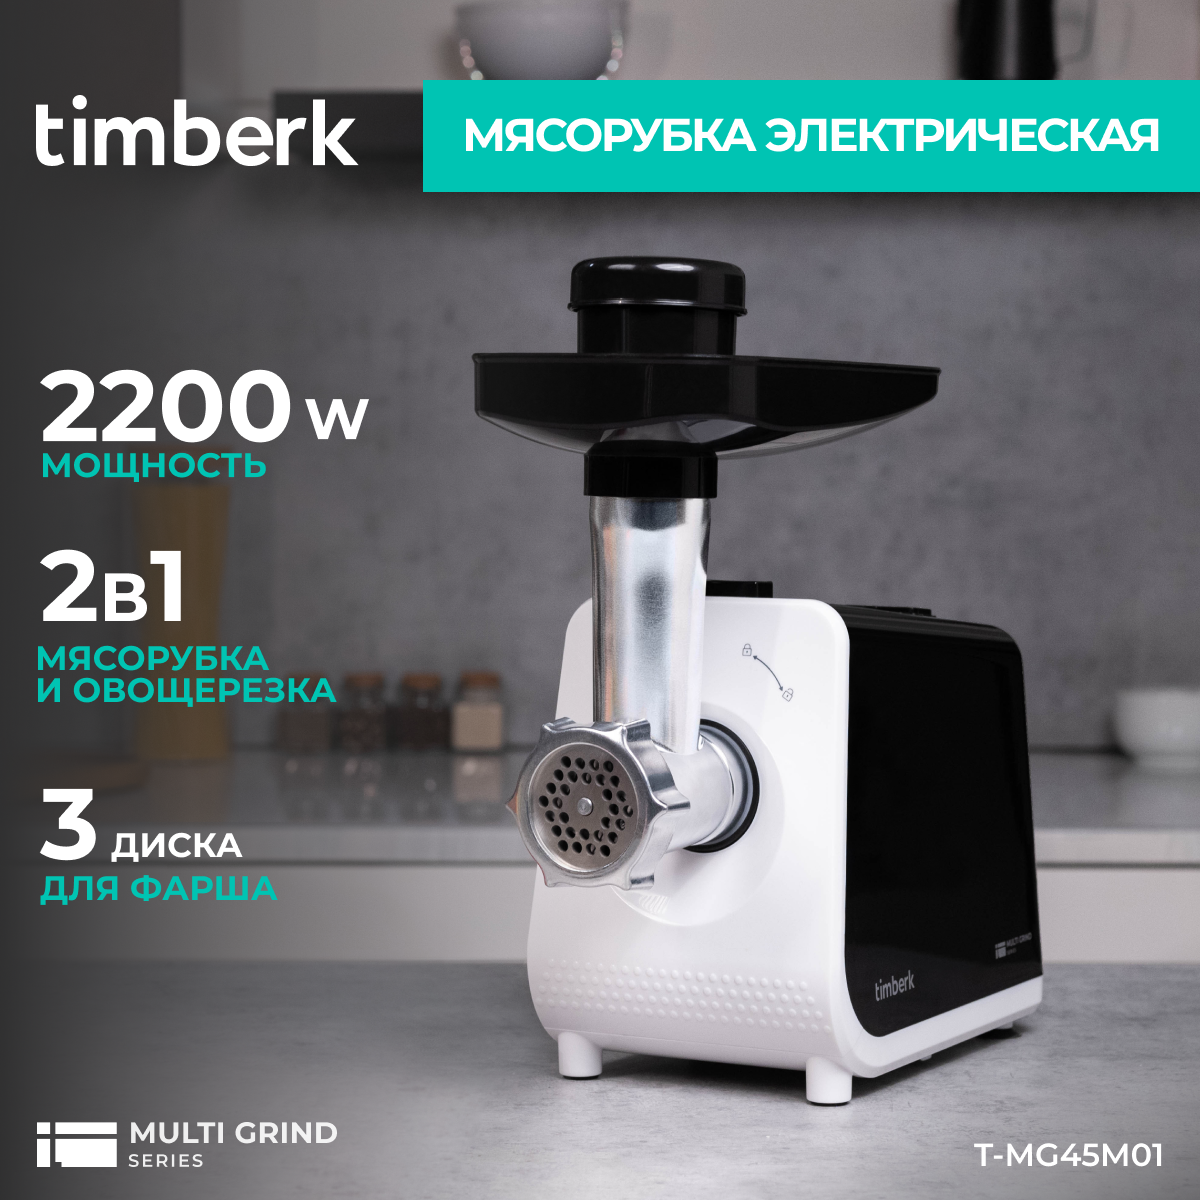 Электромясорубка Timberk T-MG45M01 450 Вт белая, черная мясорубка sakura sa 6420sw 1500 вт реверс 3 насадки белая